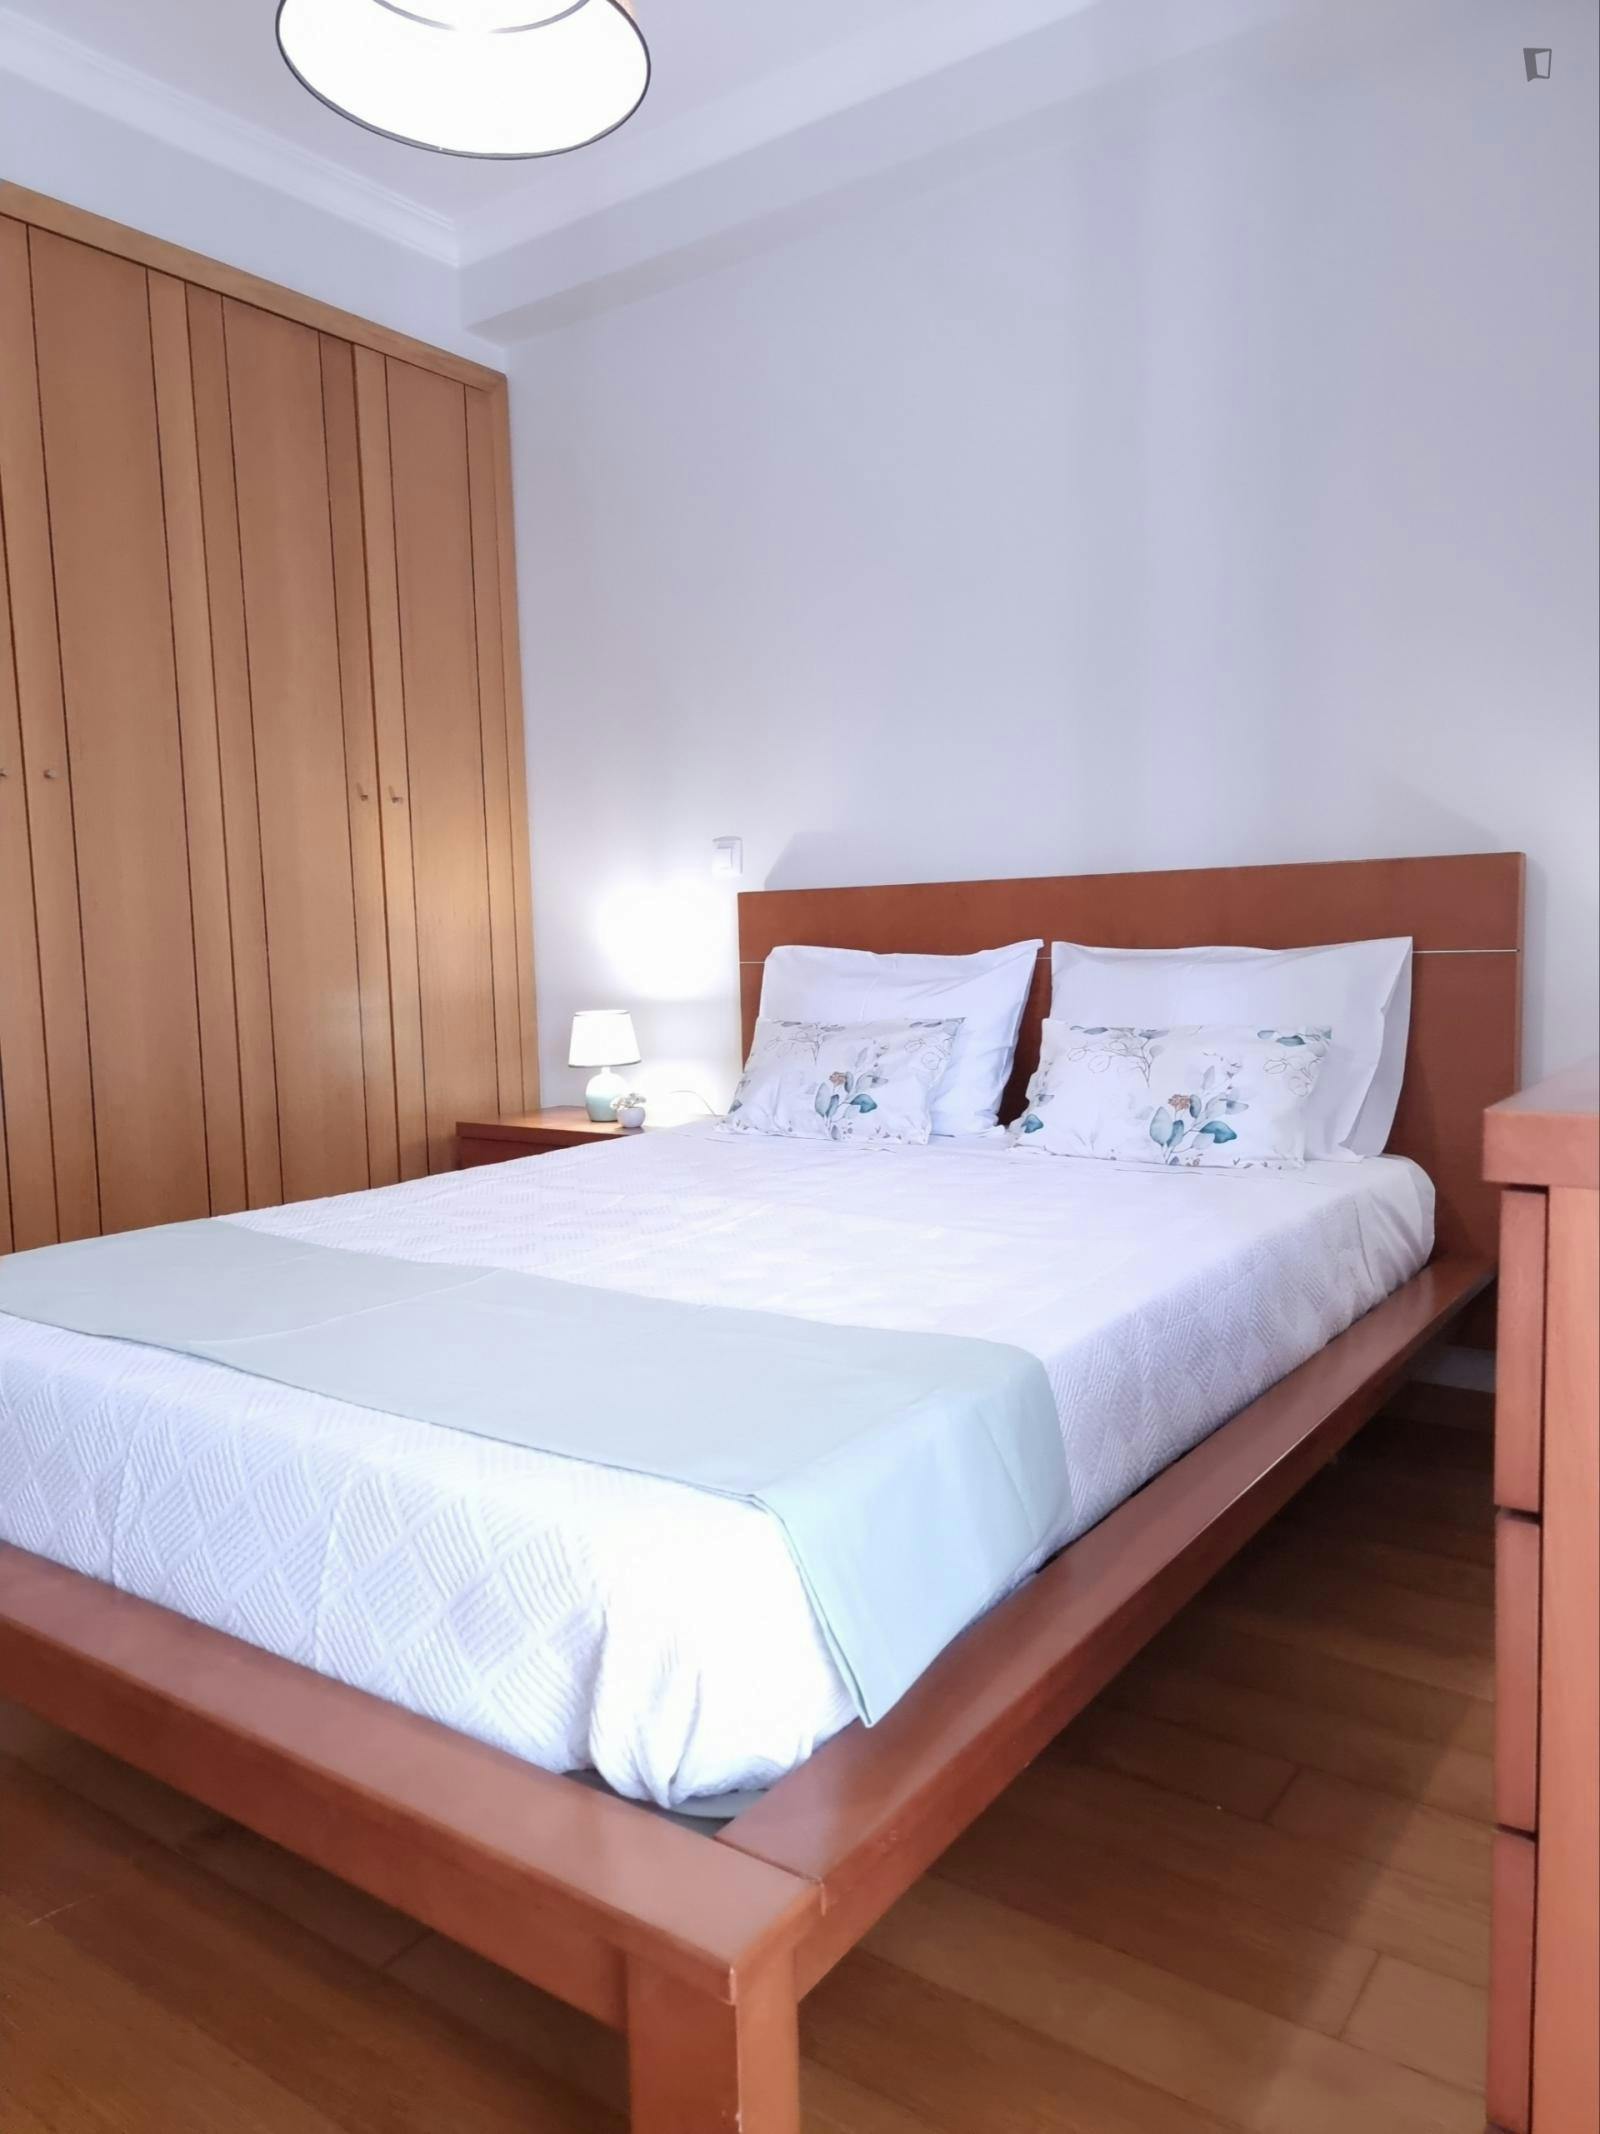 Spacius 2-bedroom apartment in Figueira da Foz beachside